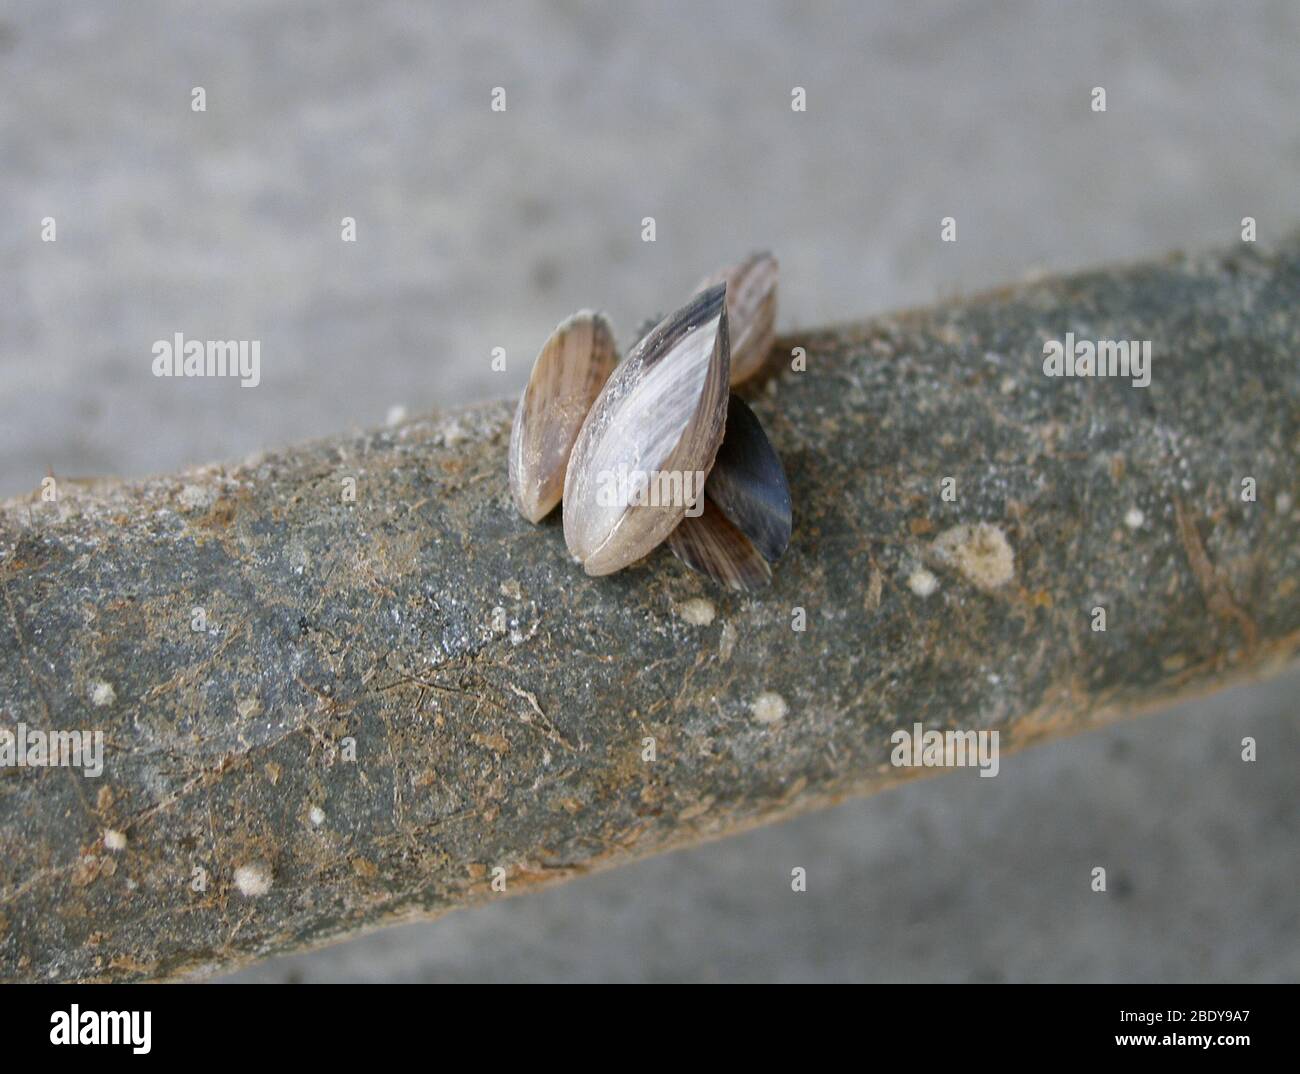 Quagga Mussels (Dreissena bugensis) Stock Photo